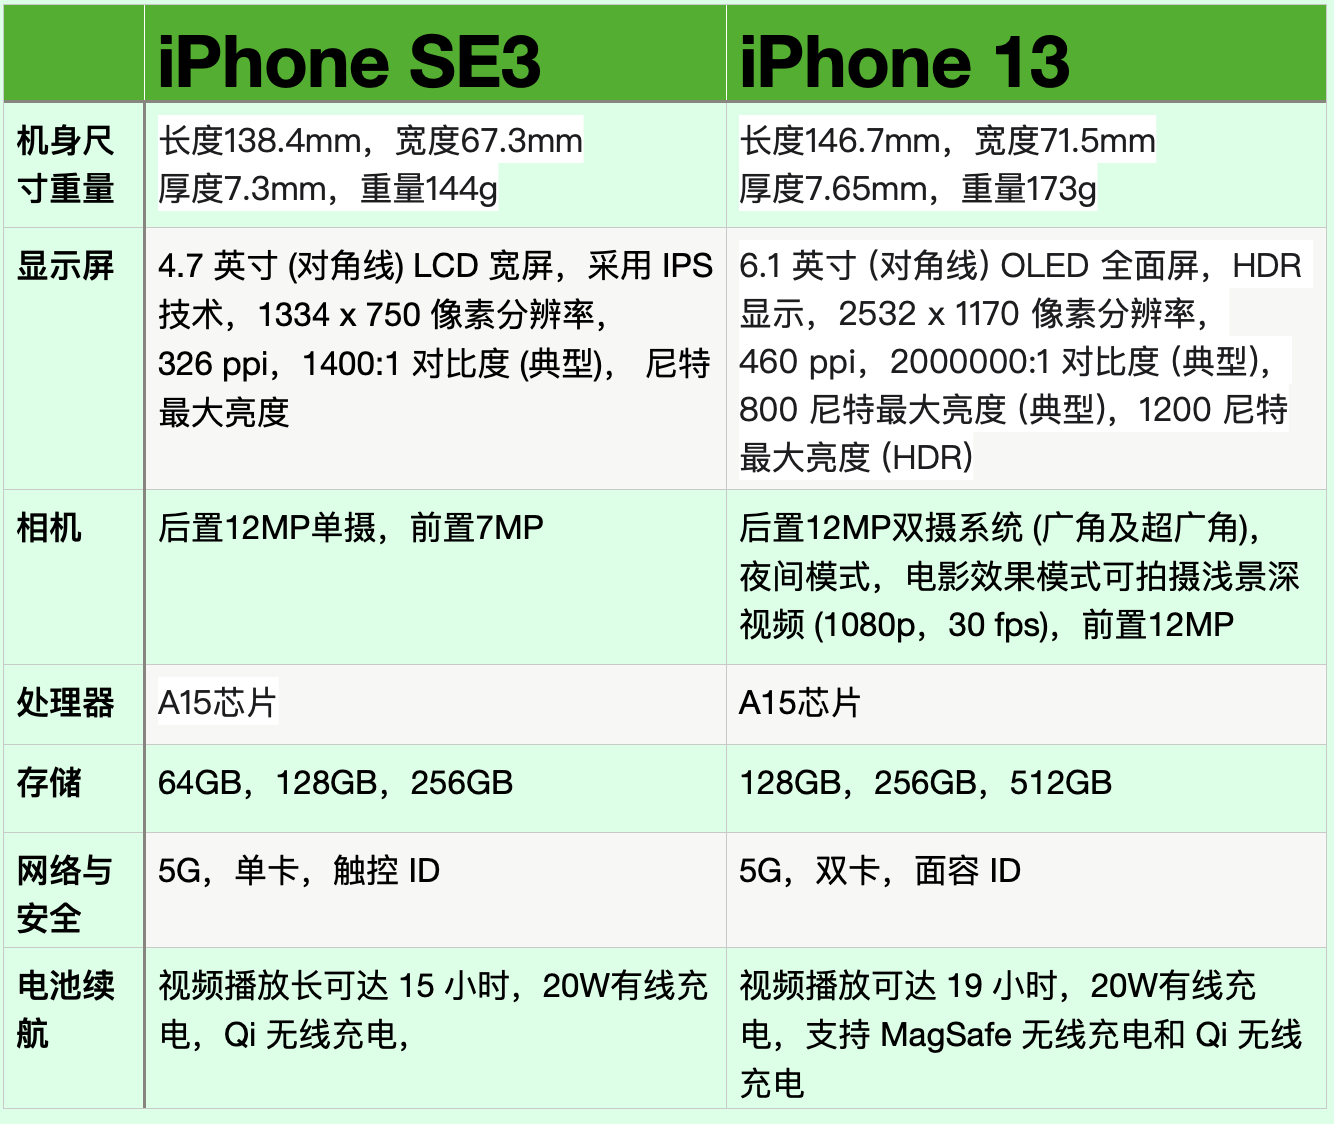 iphonese3与iphone13手机全面对比:区别很明显